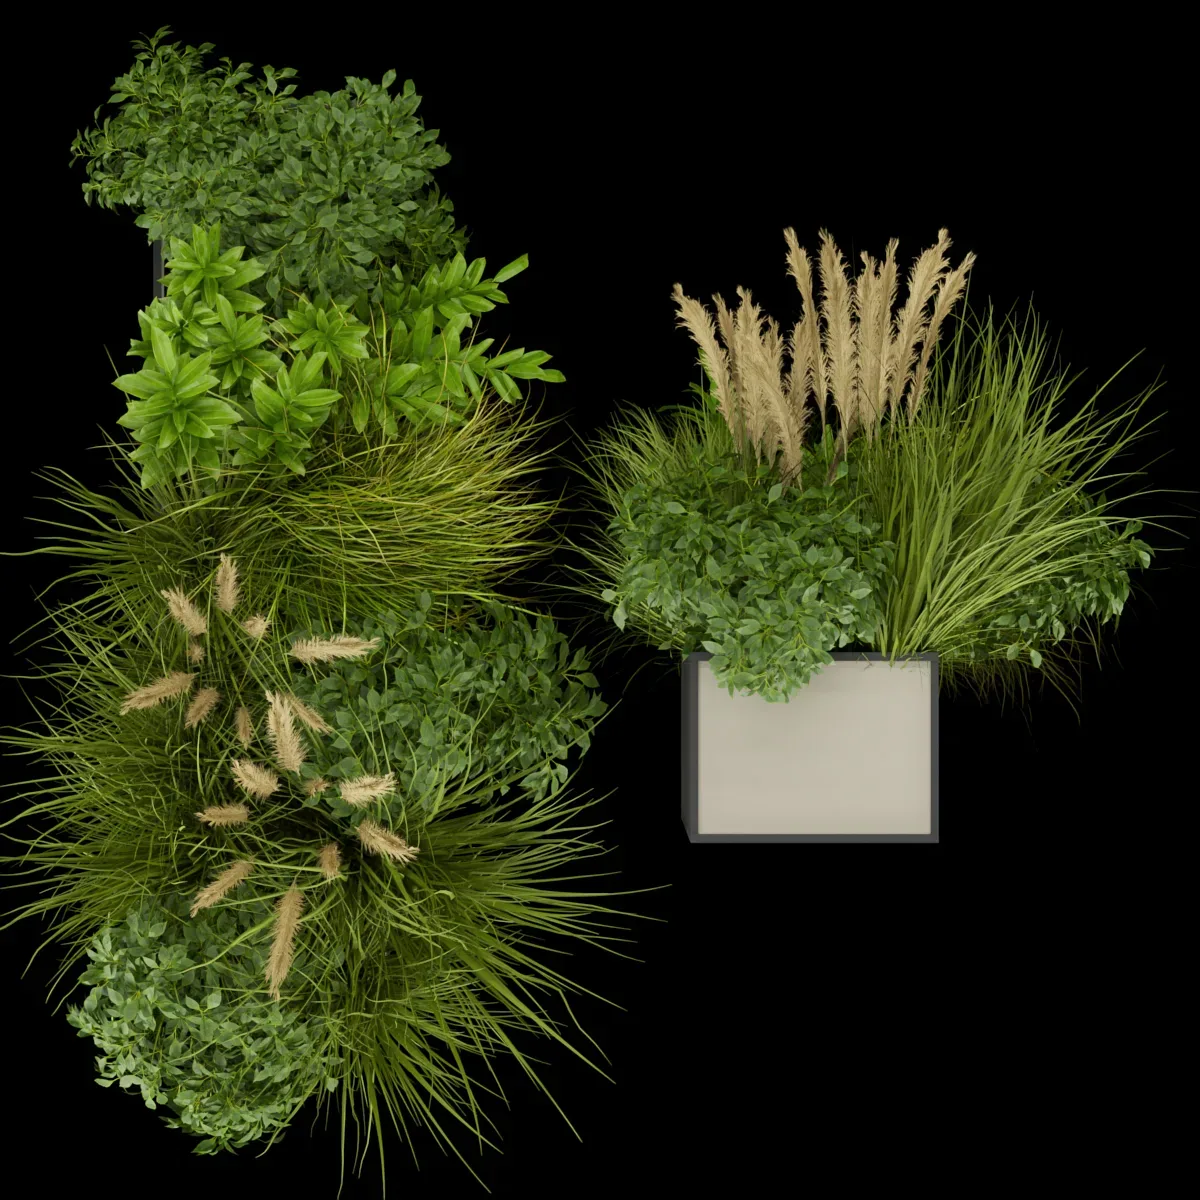 Collection plant vol 324 - indoor -leaf - grass - blender - 3dmax - cinema 4d